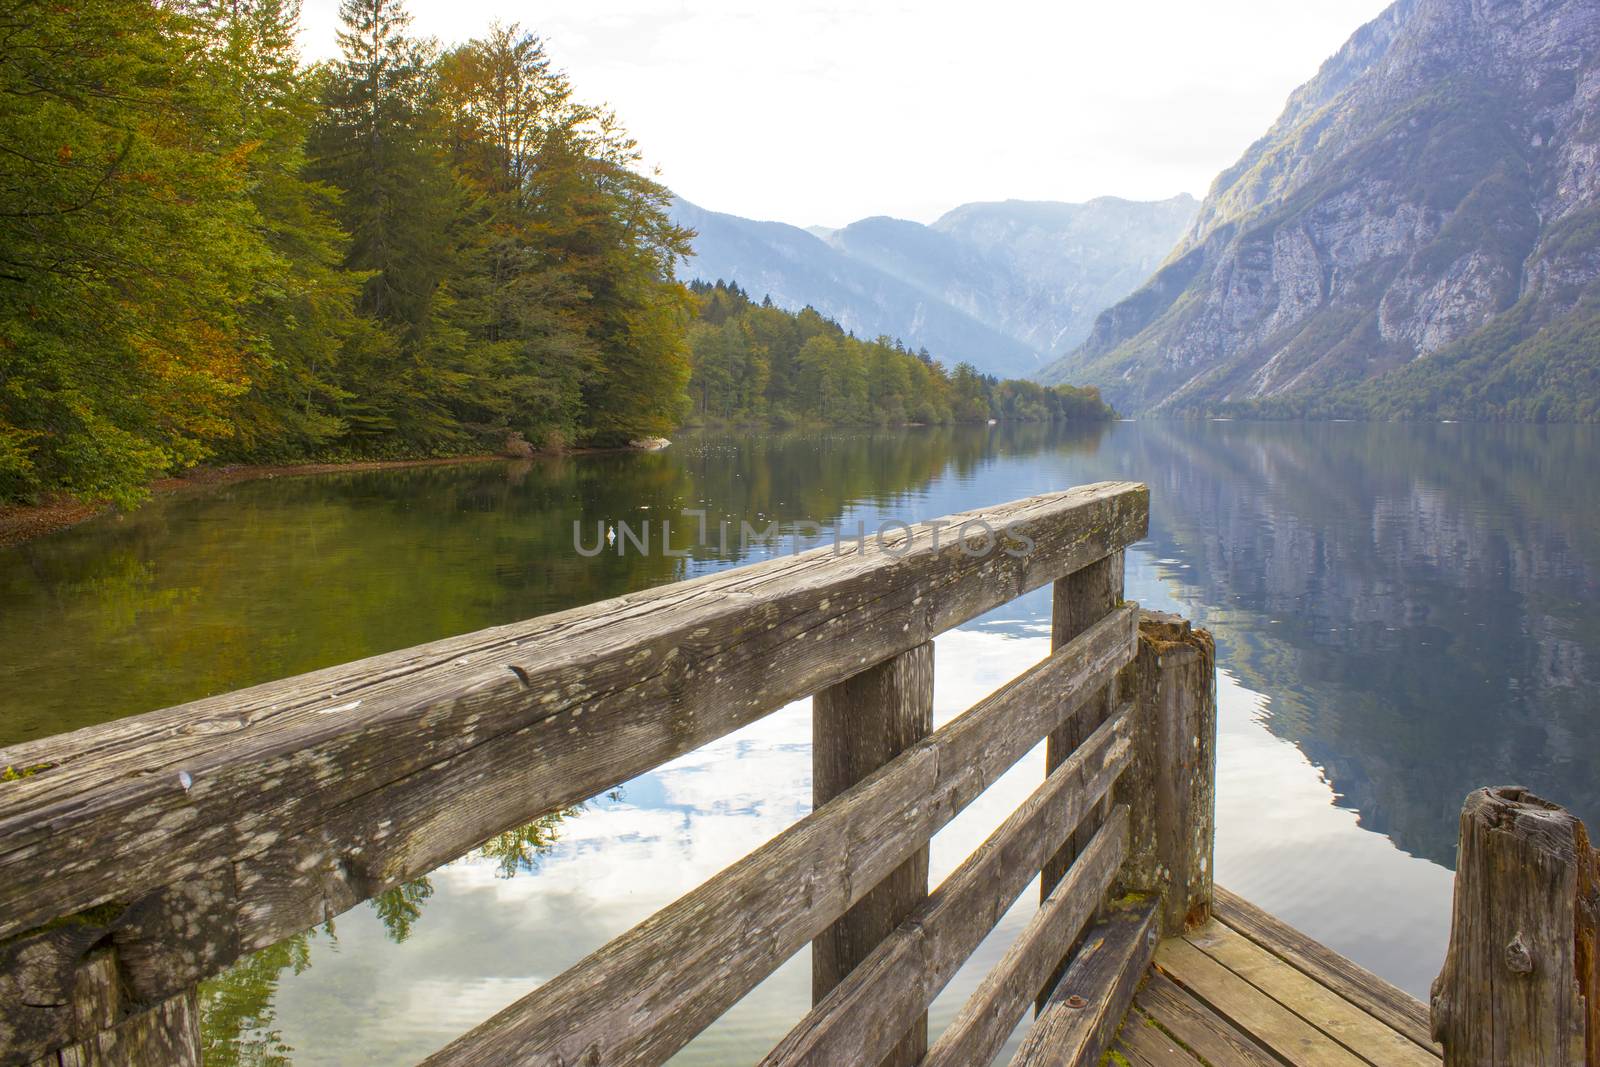 Bohinj lake, Slovenia by miradrozdowski